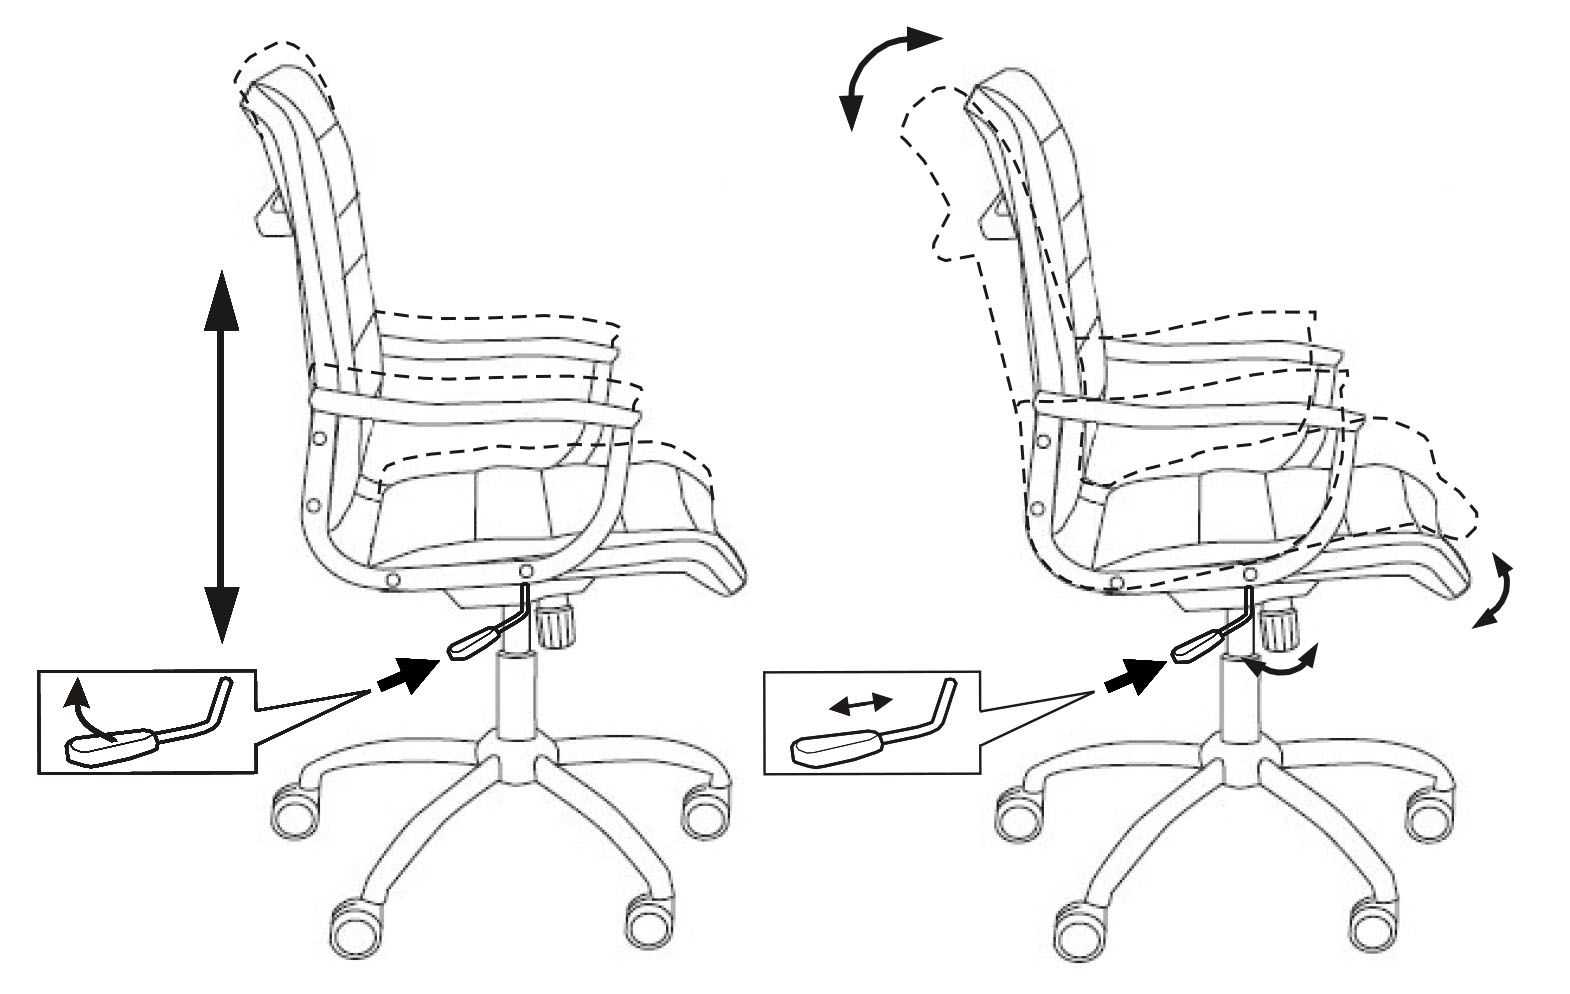 Как починить офисное кресло, если оно опускается?